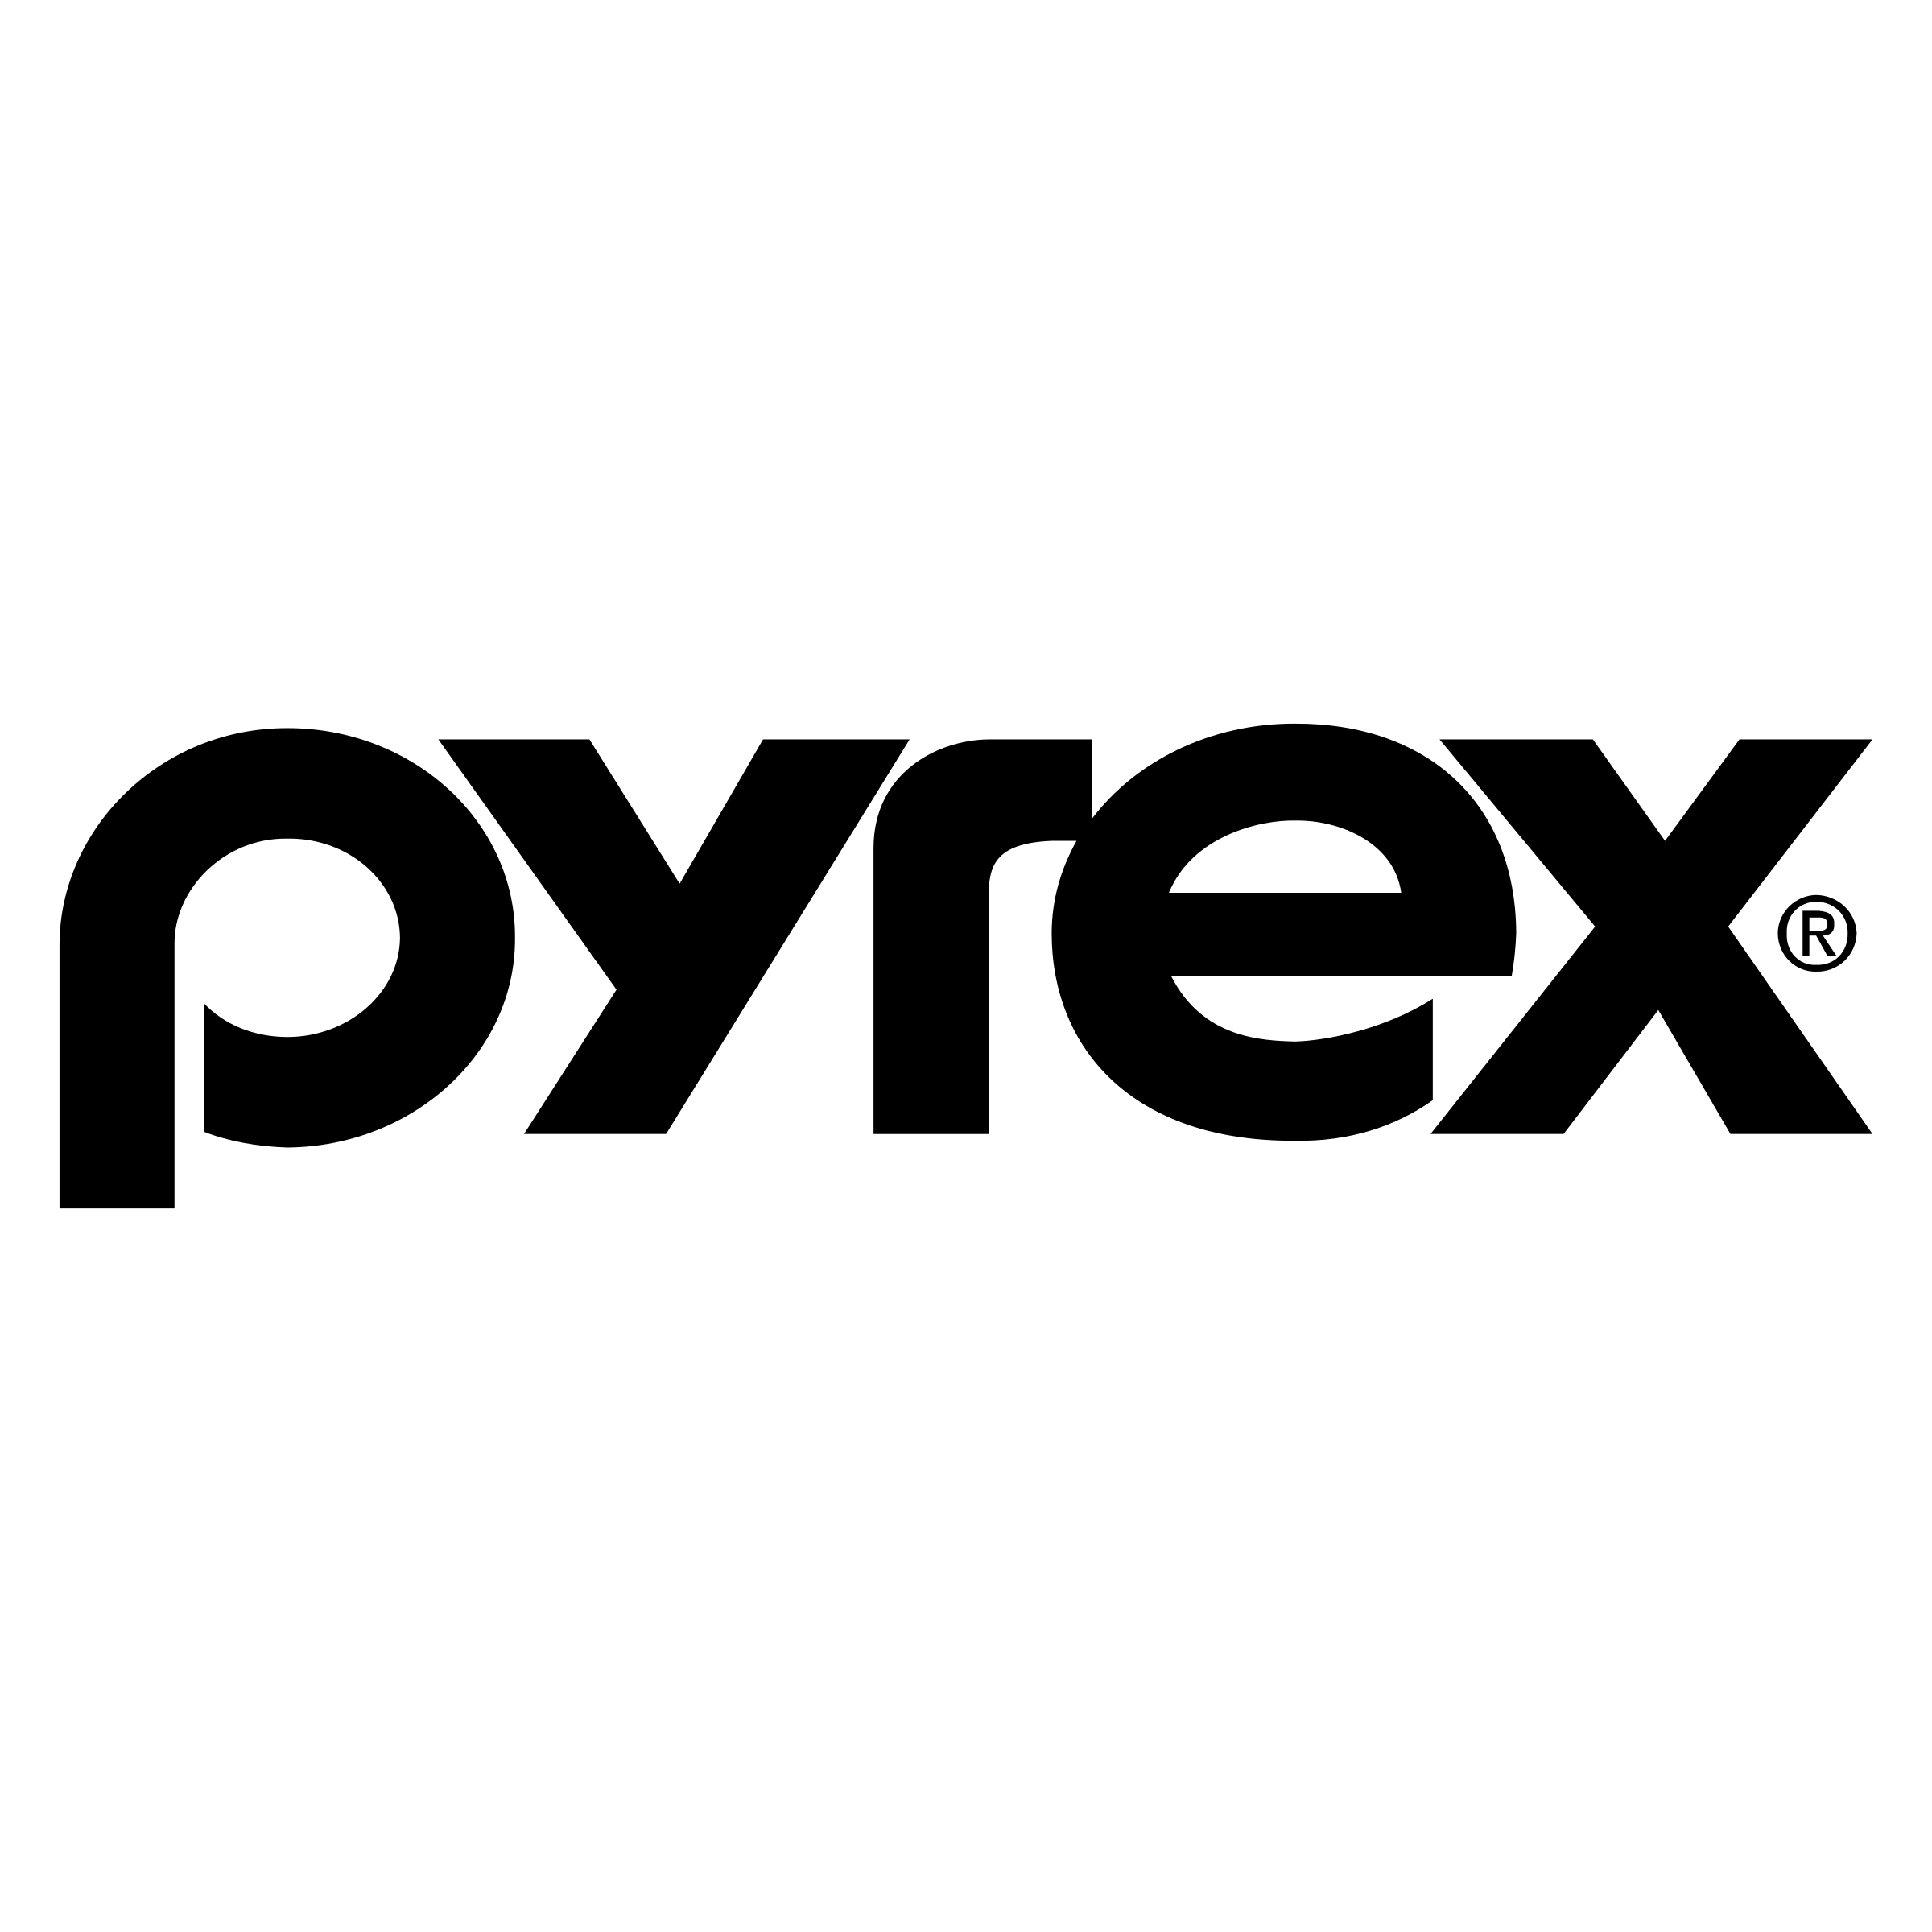 Download Pyrex Logo Logodix